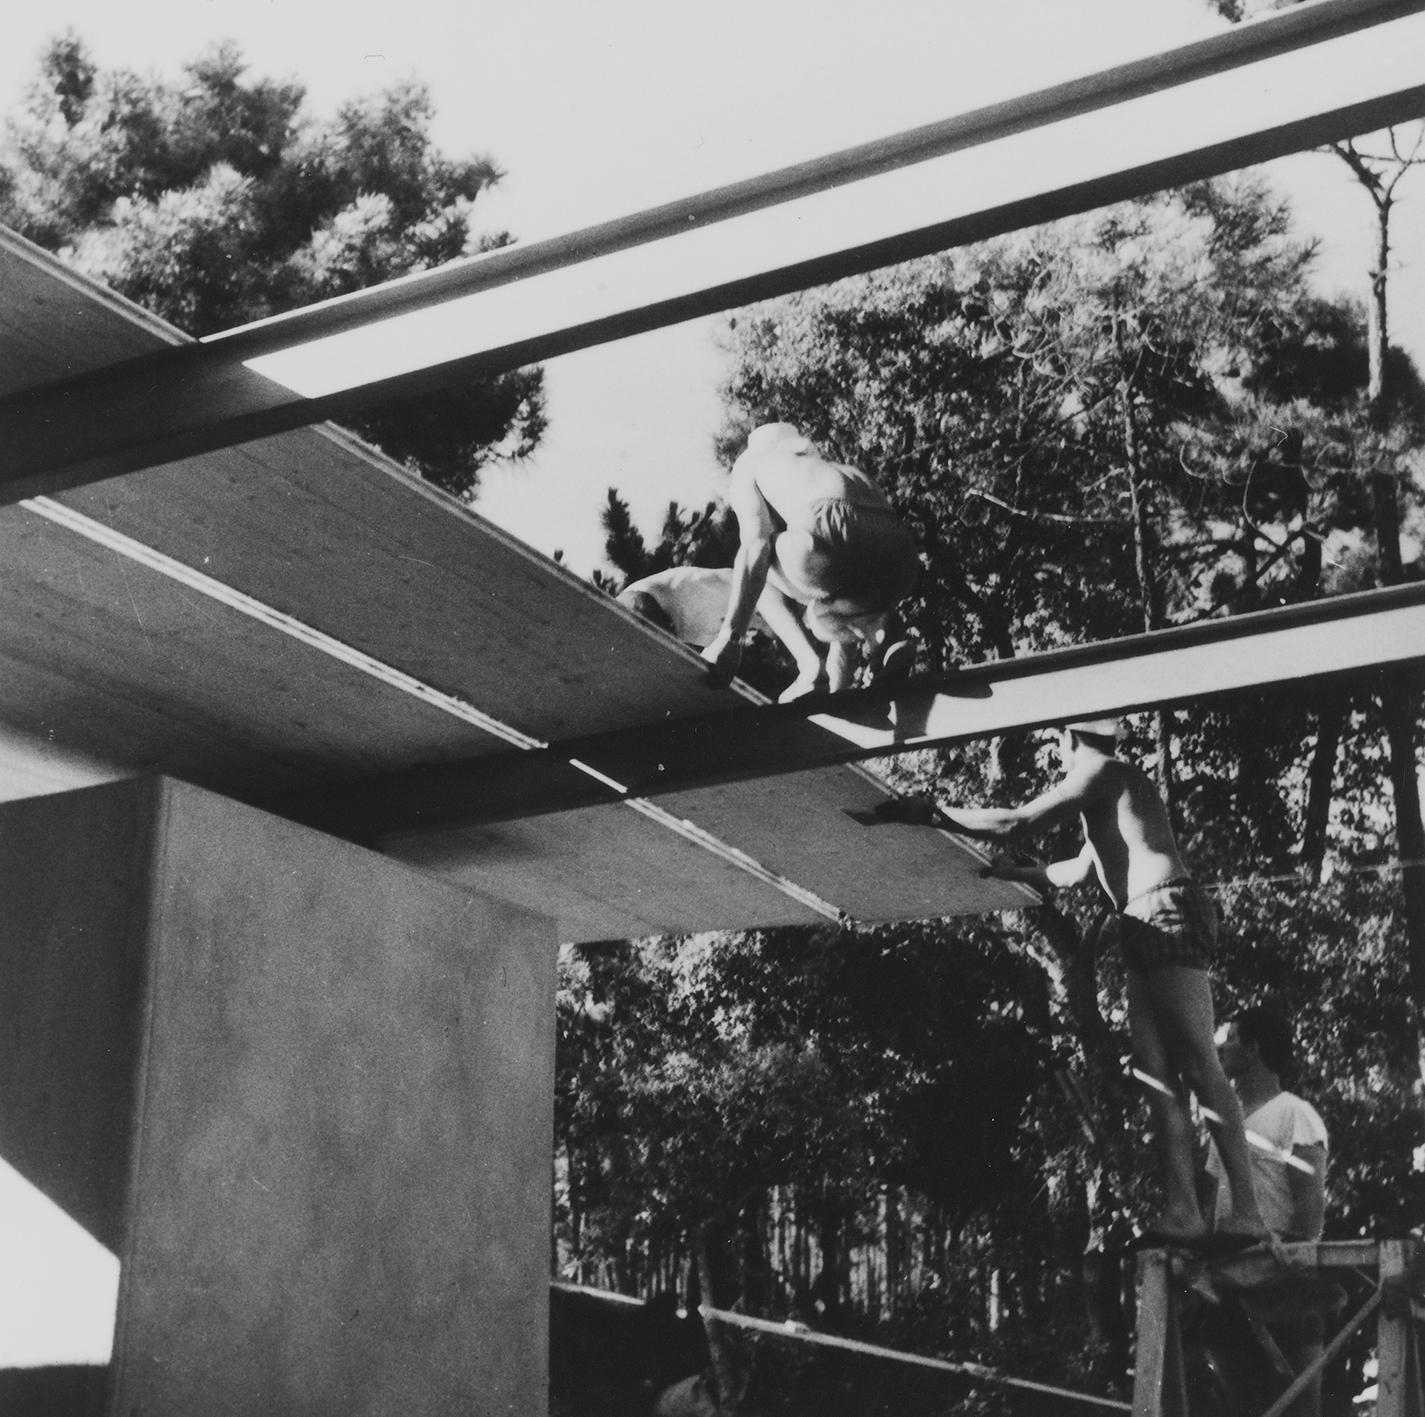 Villa Seynave, Domaine de Beauvallon, Grimaud, 1961 (Jean Prouvé, with architects N. Hutchison, J. Parente, M. Sauzet, J. Vilfour). View of the building site.